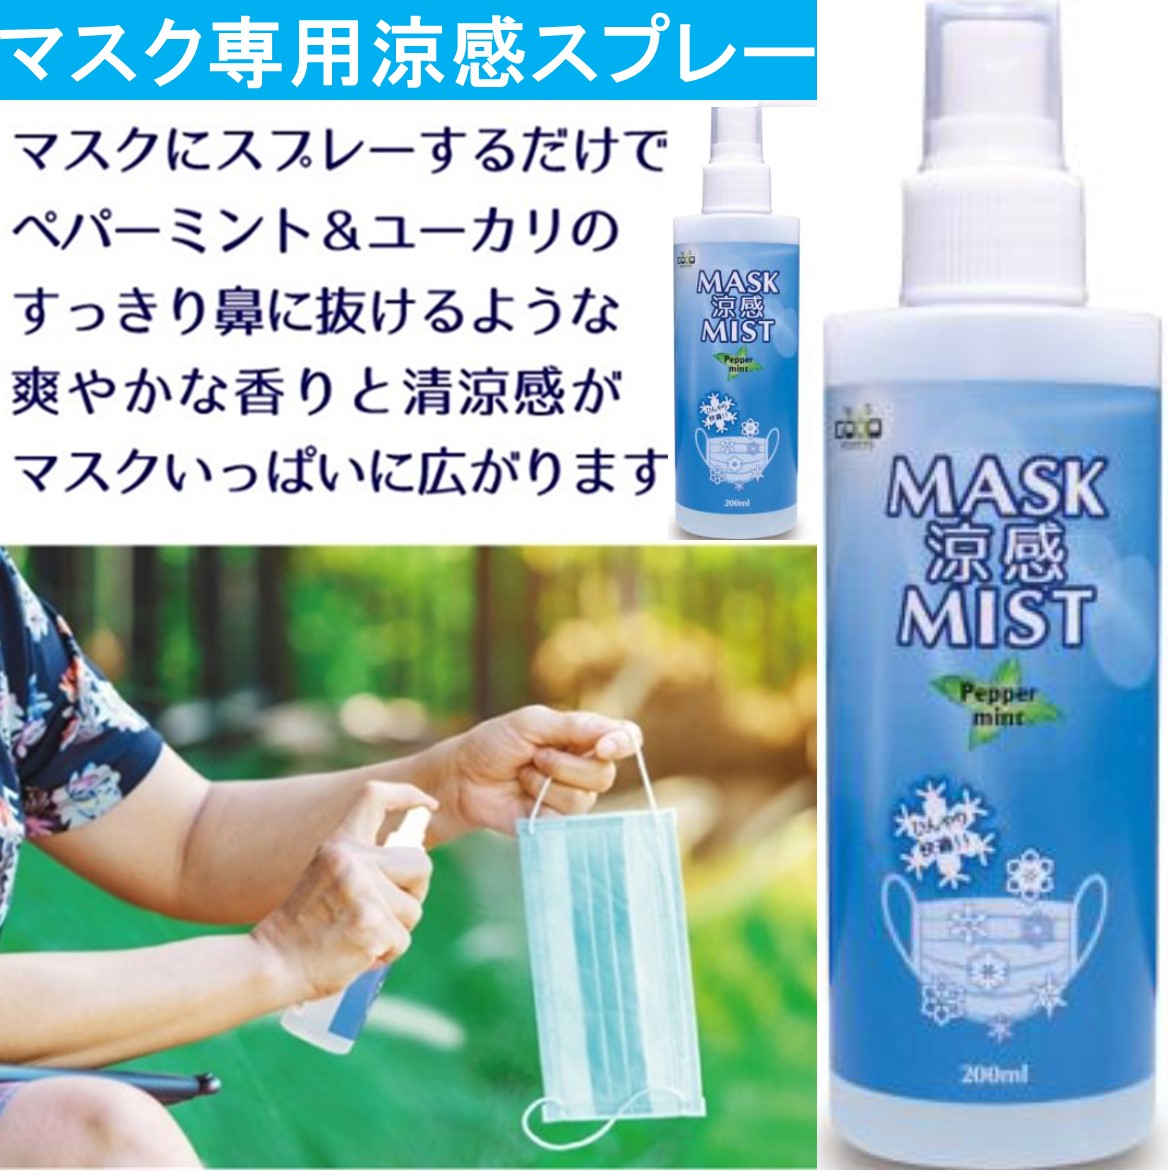 マスクスプレー 涼感 ミント 冷感 ハッカ油スプレー 200ml 日本製606983